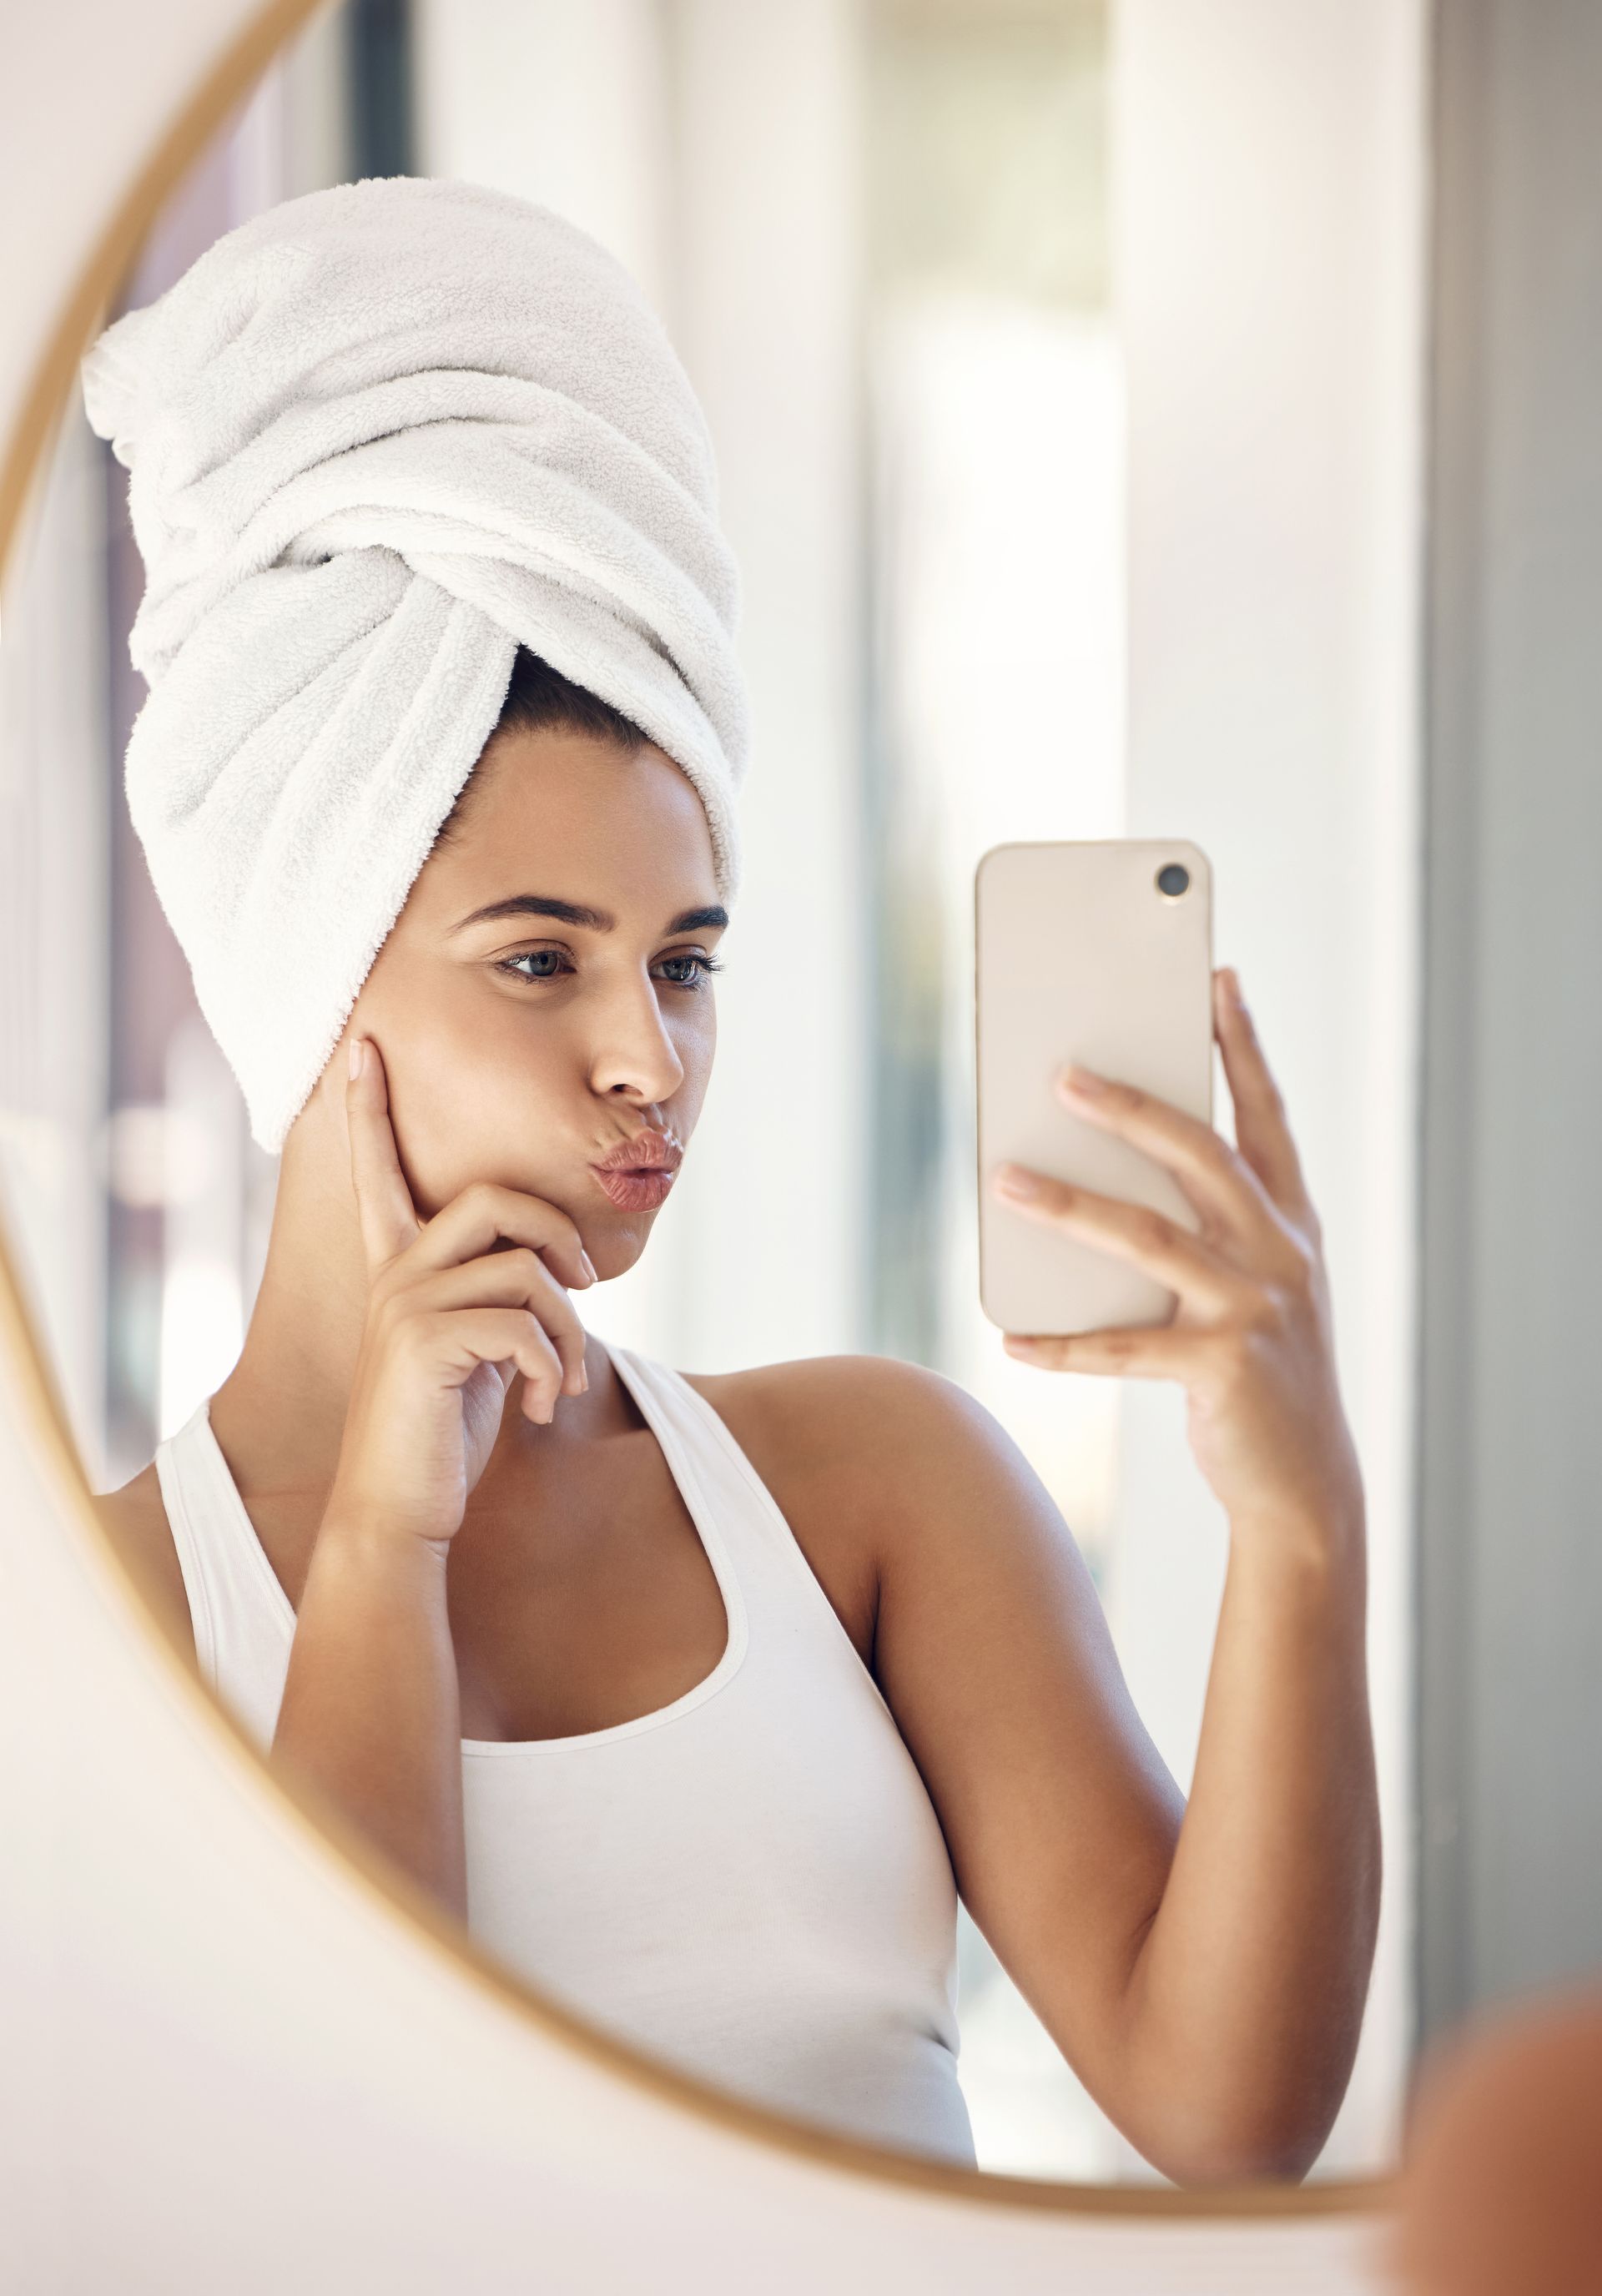 Una mujer con una toalla envuelta alrededor de su cabeza se está tomando un selfie en el espejo.